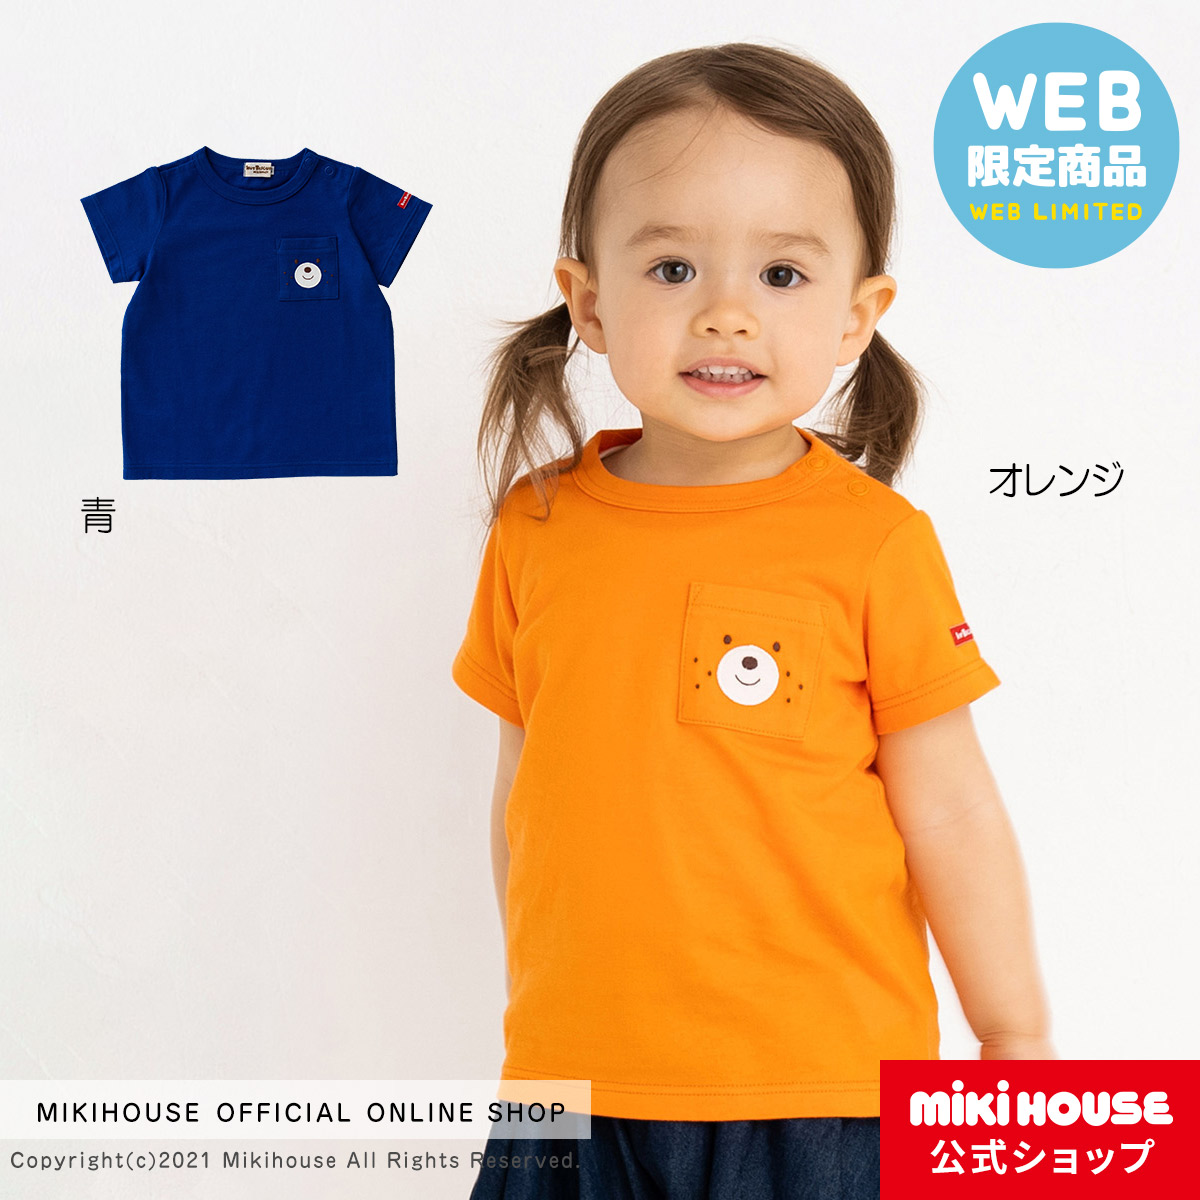 メール便送料無料05 ミキハウス MIKIHOUSE 子供服 ワンピース tシャツ 